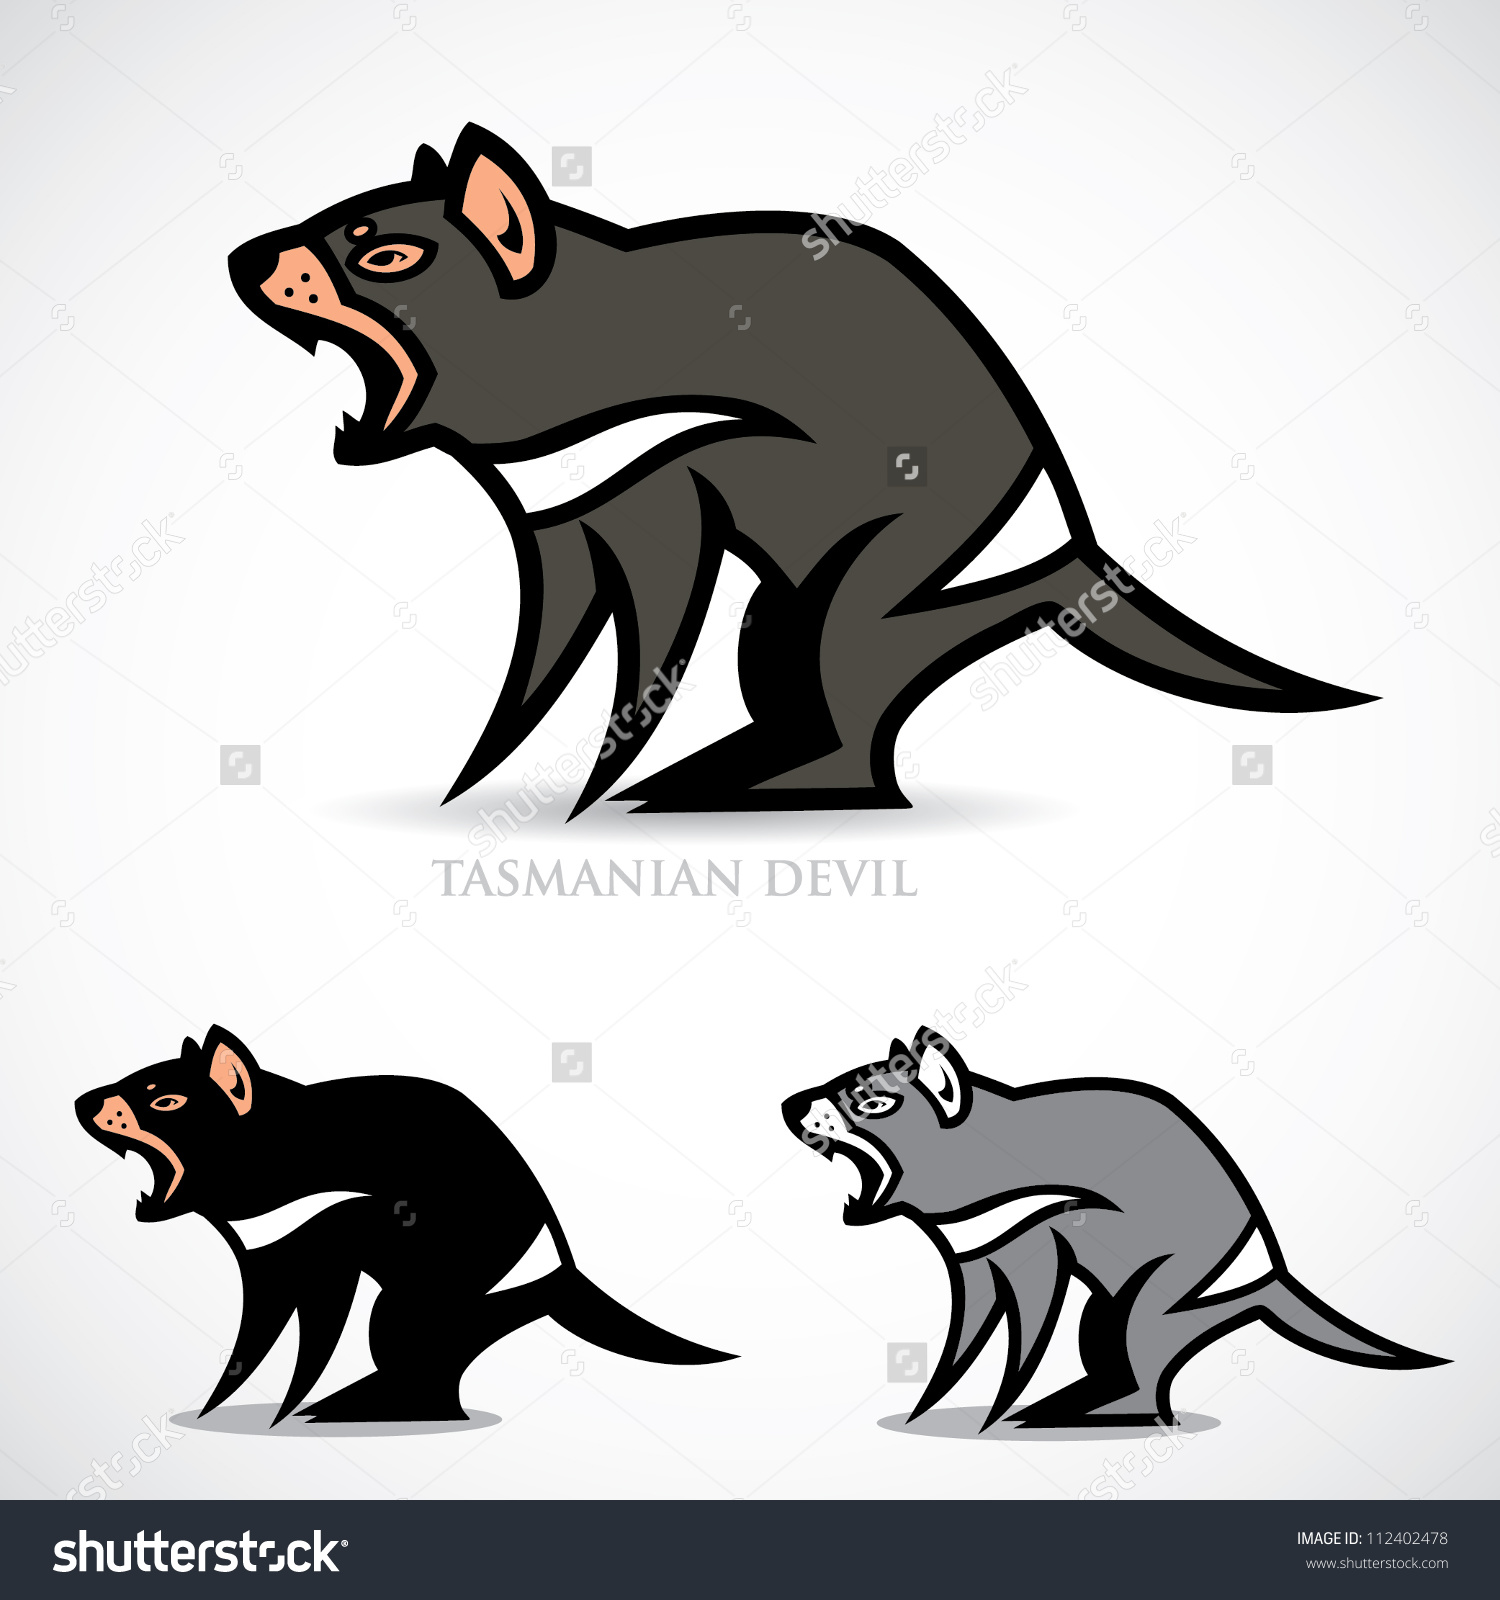 Tasmanian devil - vector illustration